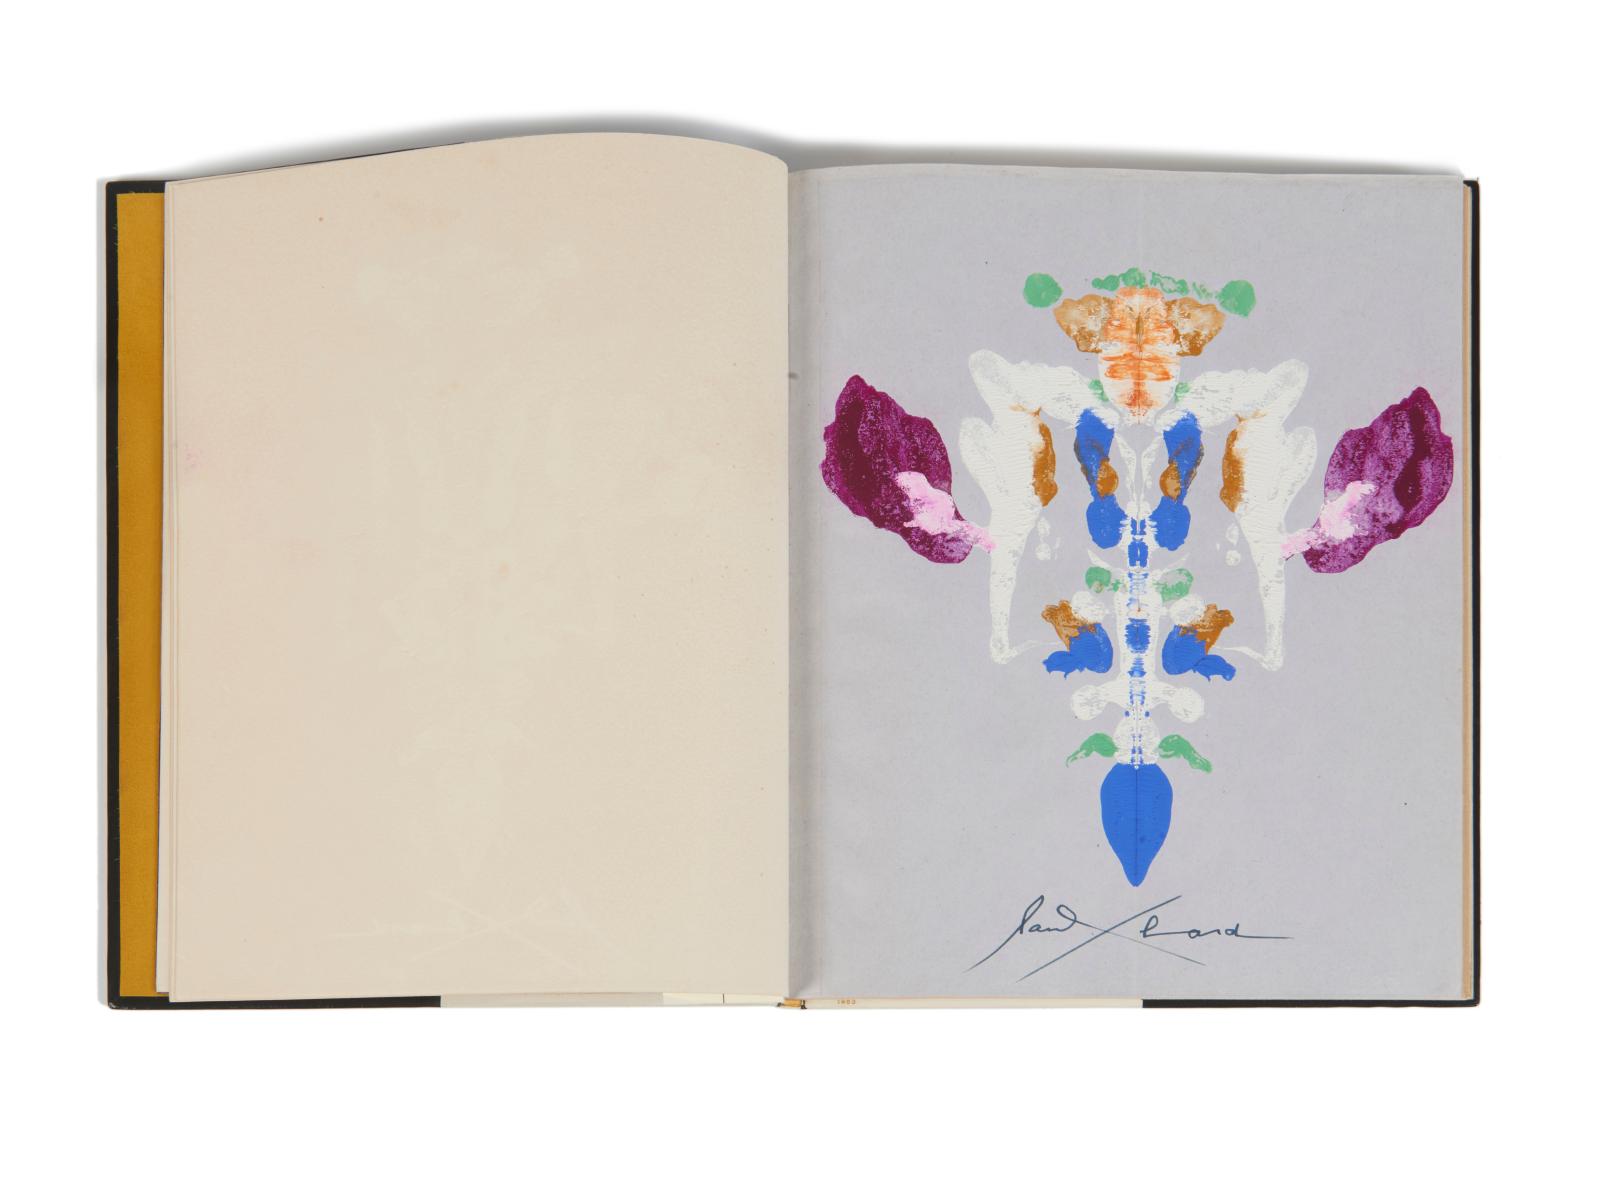 Paul Éluard (1895-1952), "Le Livre ouvert III", autograph manuscript with original gouaches, c. 1944, mosaic binding by Paul Bonet.On 3 April, Drouot,